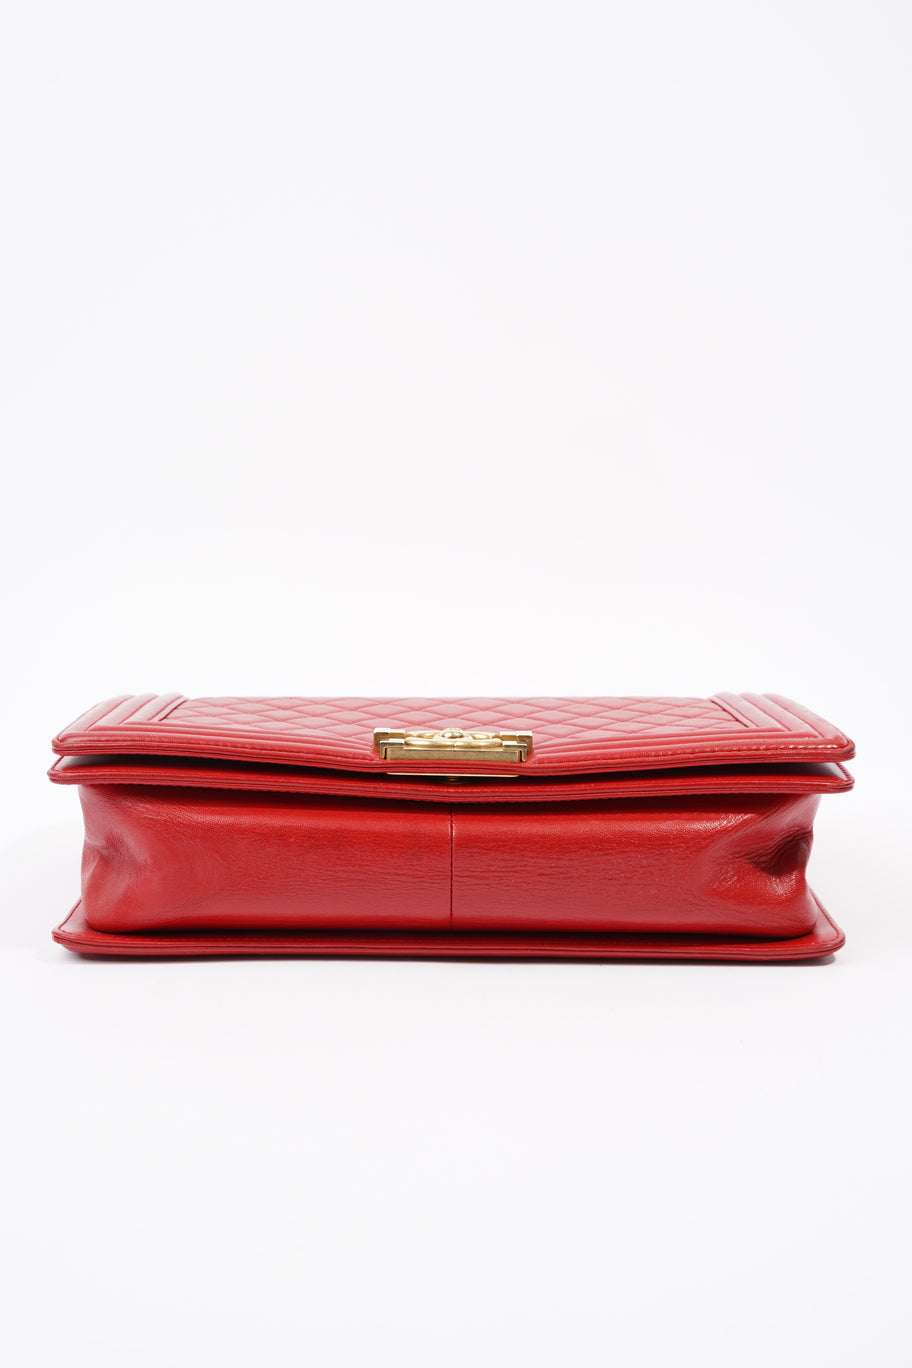 Boy Bag Red Calfskin Leather Large Image 7